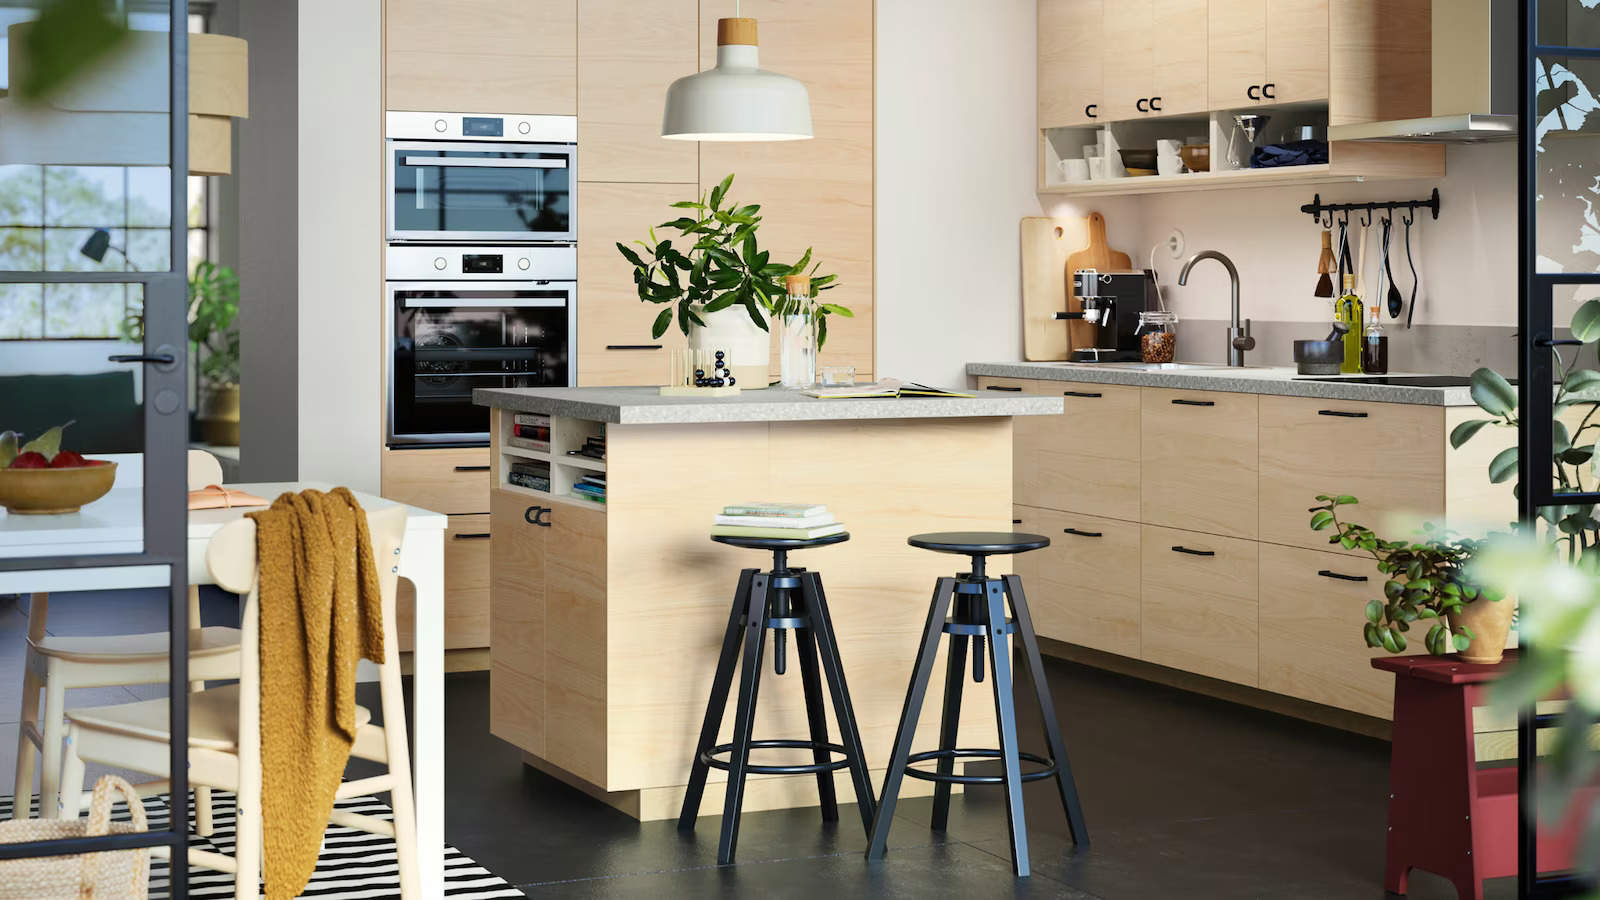 Cocina de madera con taburetes de estilo industrial, de IKEA